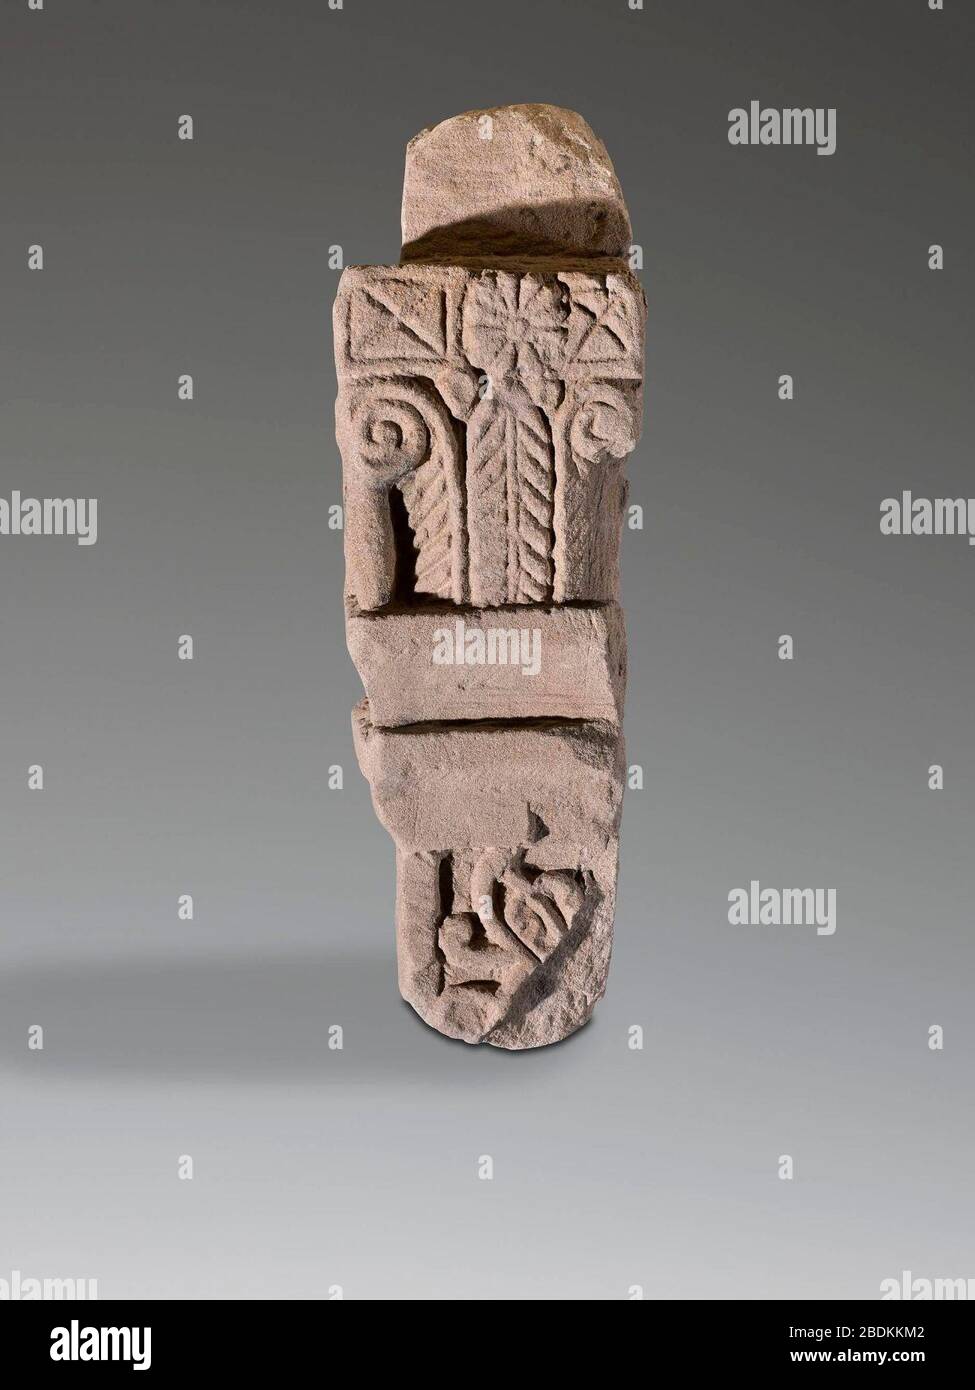 Górna część węgara z dekoracją reliefową, warsztat nubijski. Stock Photo